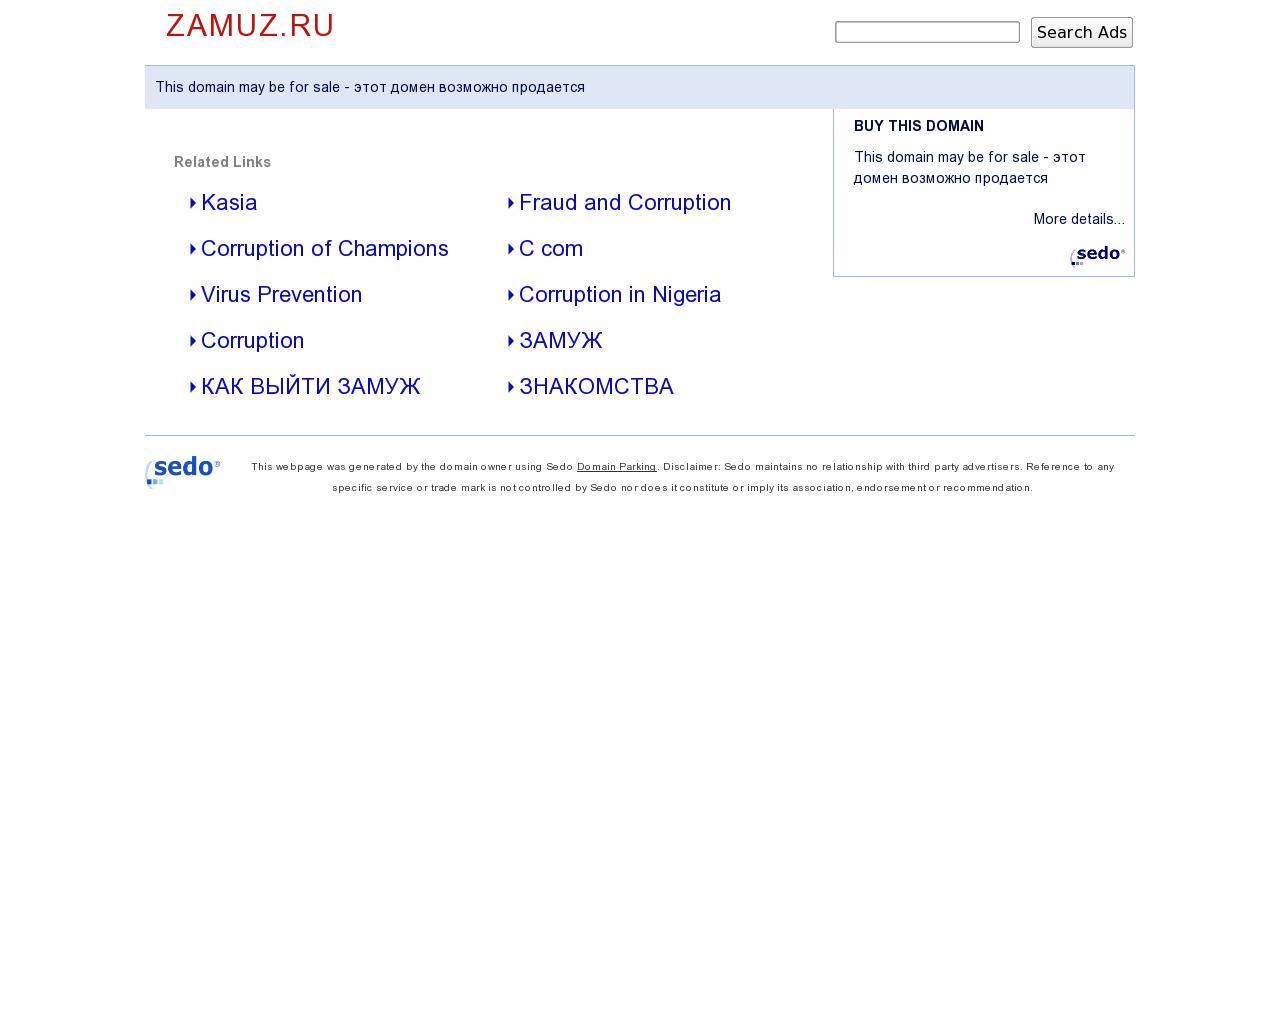 Изображение сайта zamuz.ru в разрешении 1280x1024